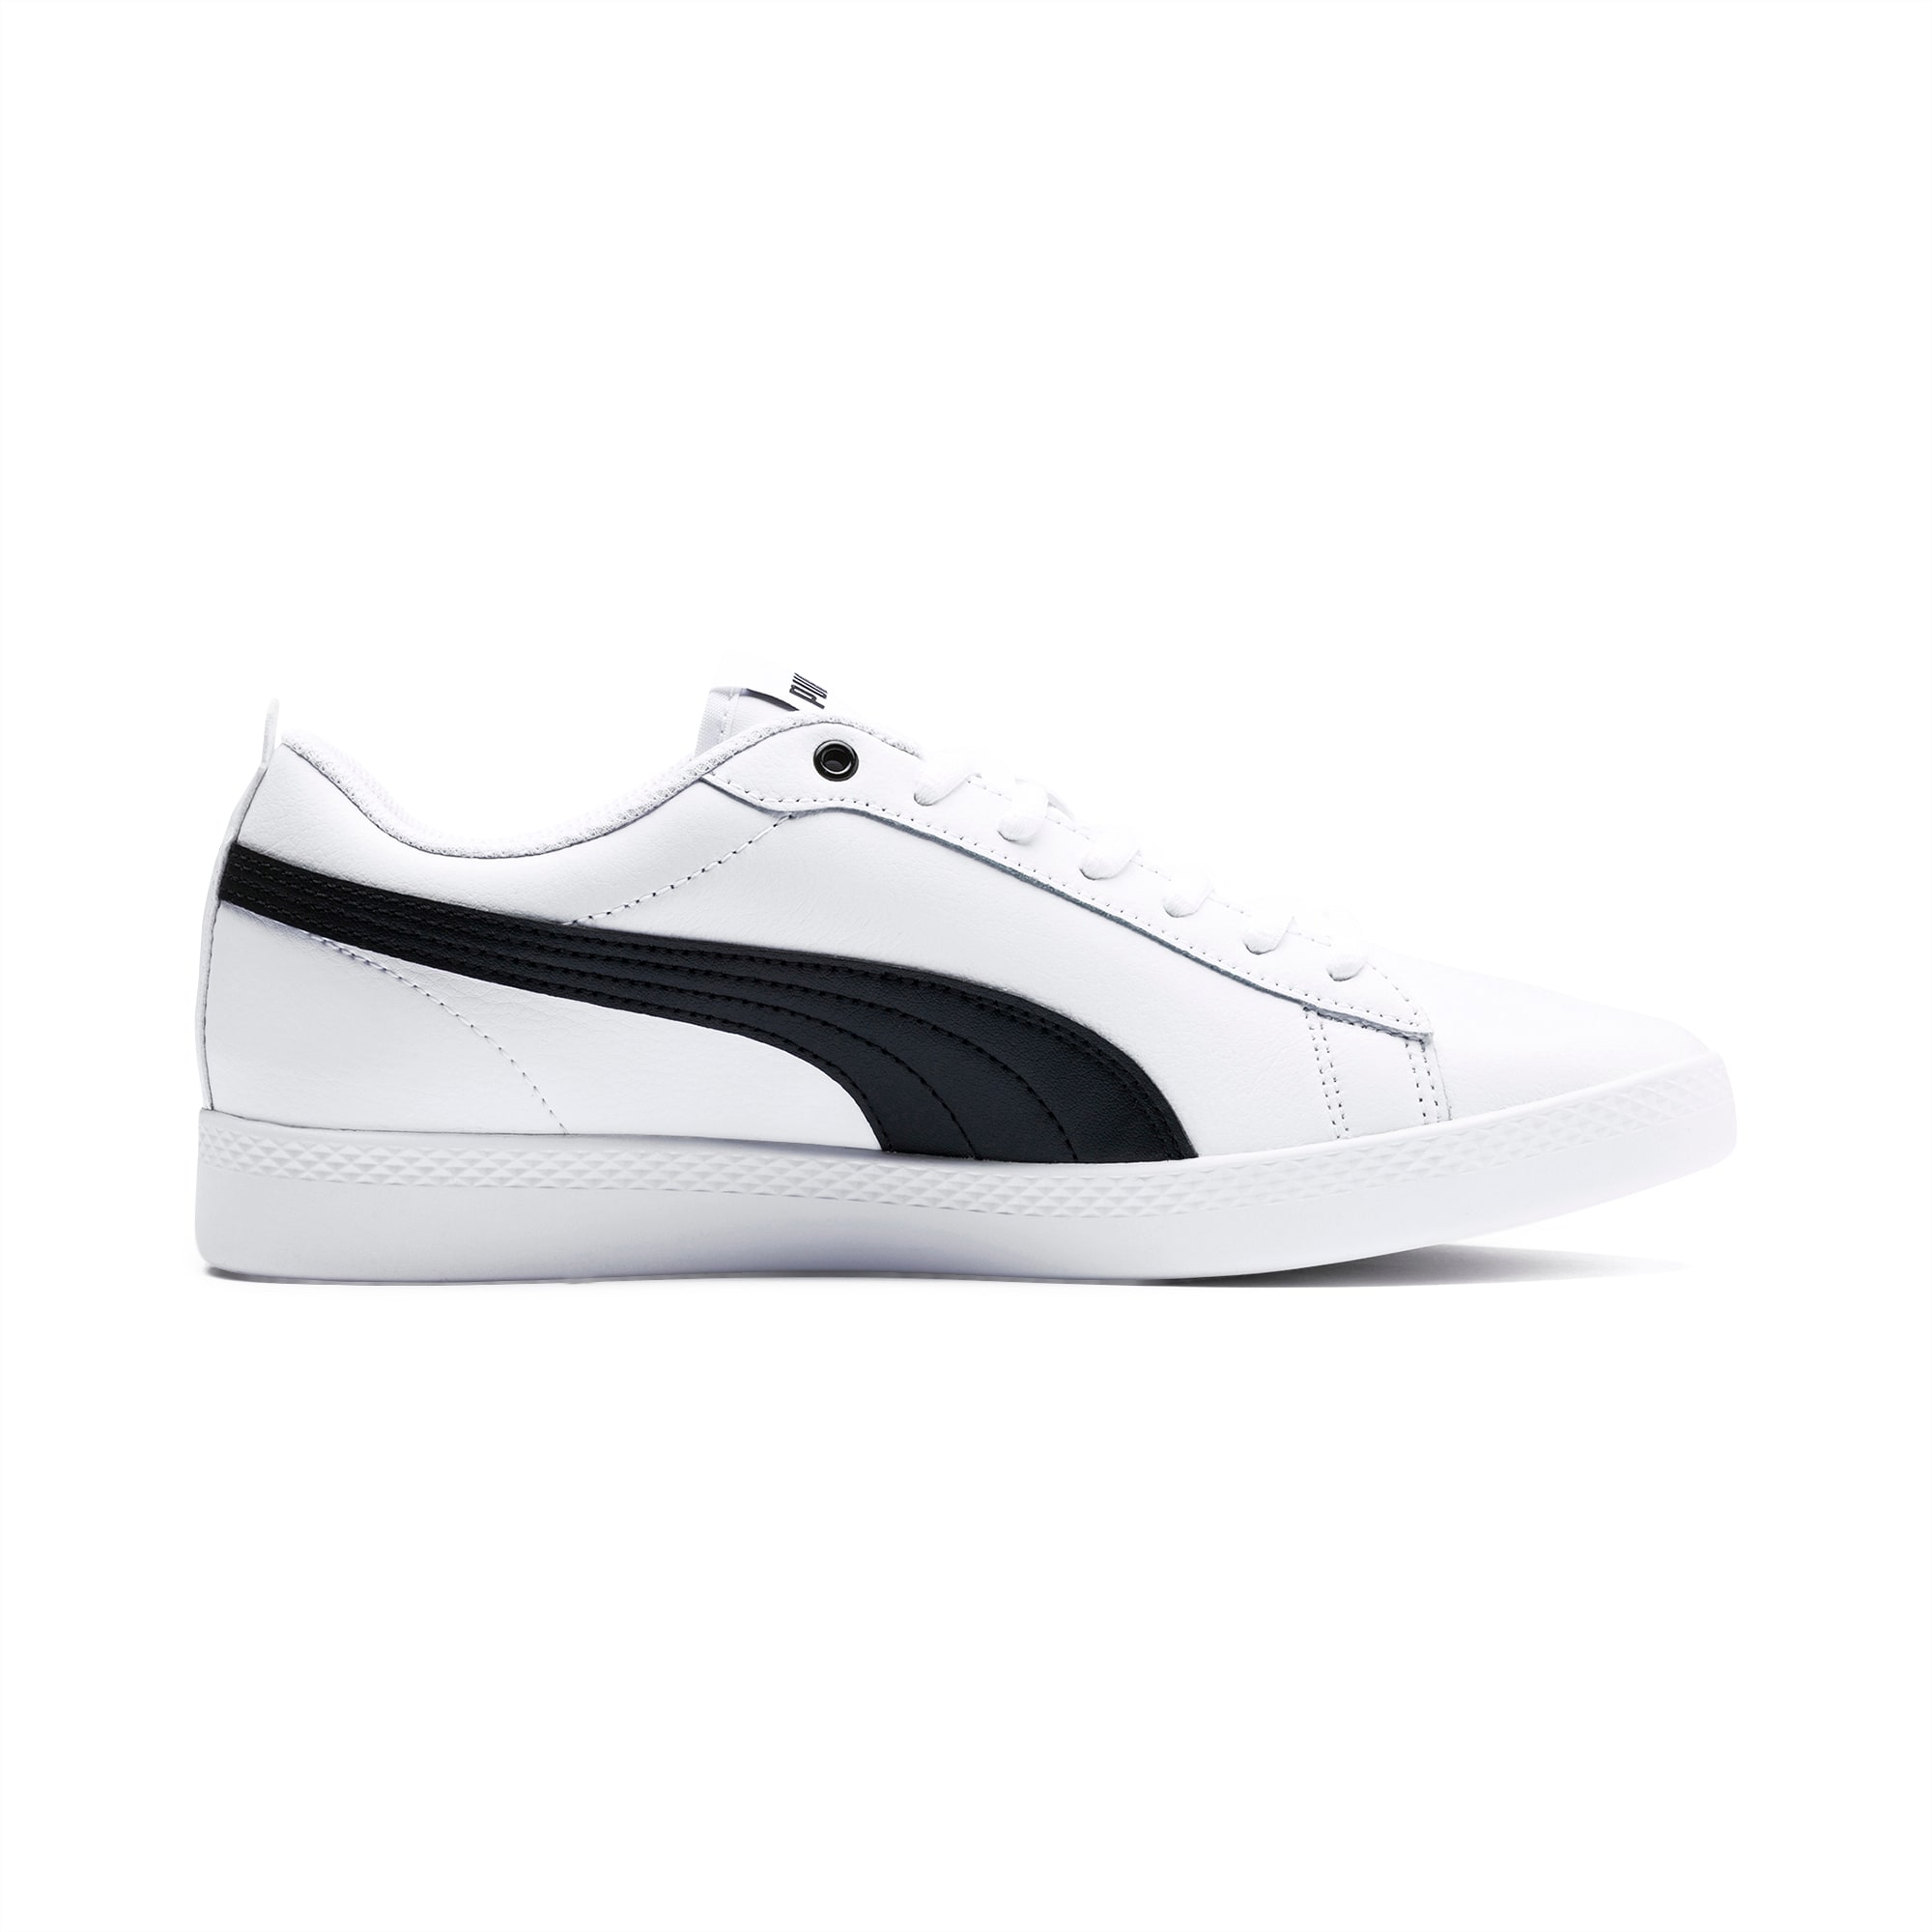 PUMA Smash V2 Leder-Sneakers Damen Schuhe, Weiß/Schwarz, Größe: 35.5, Schuhe